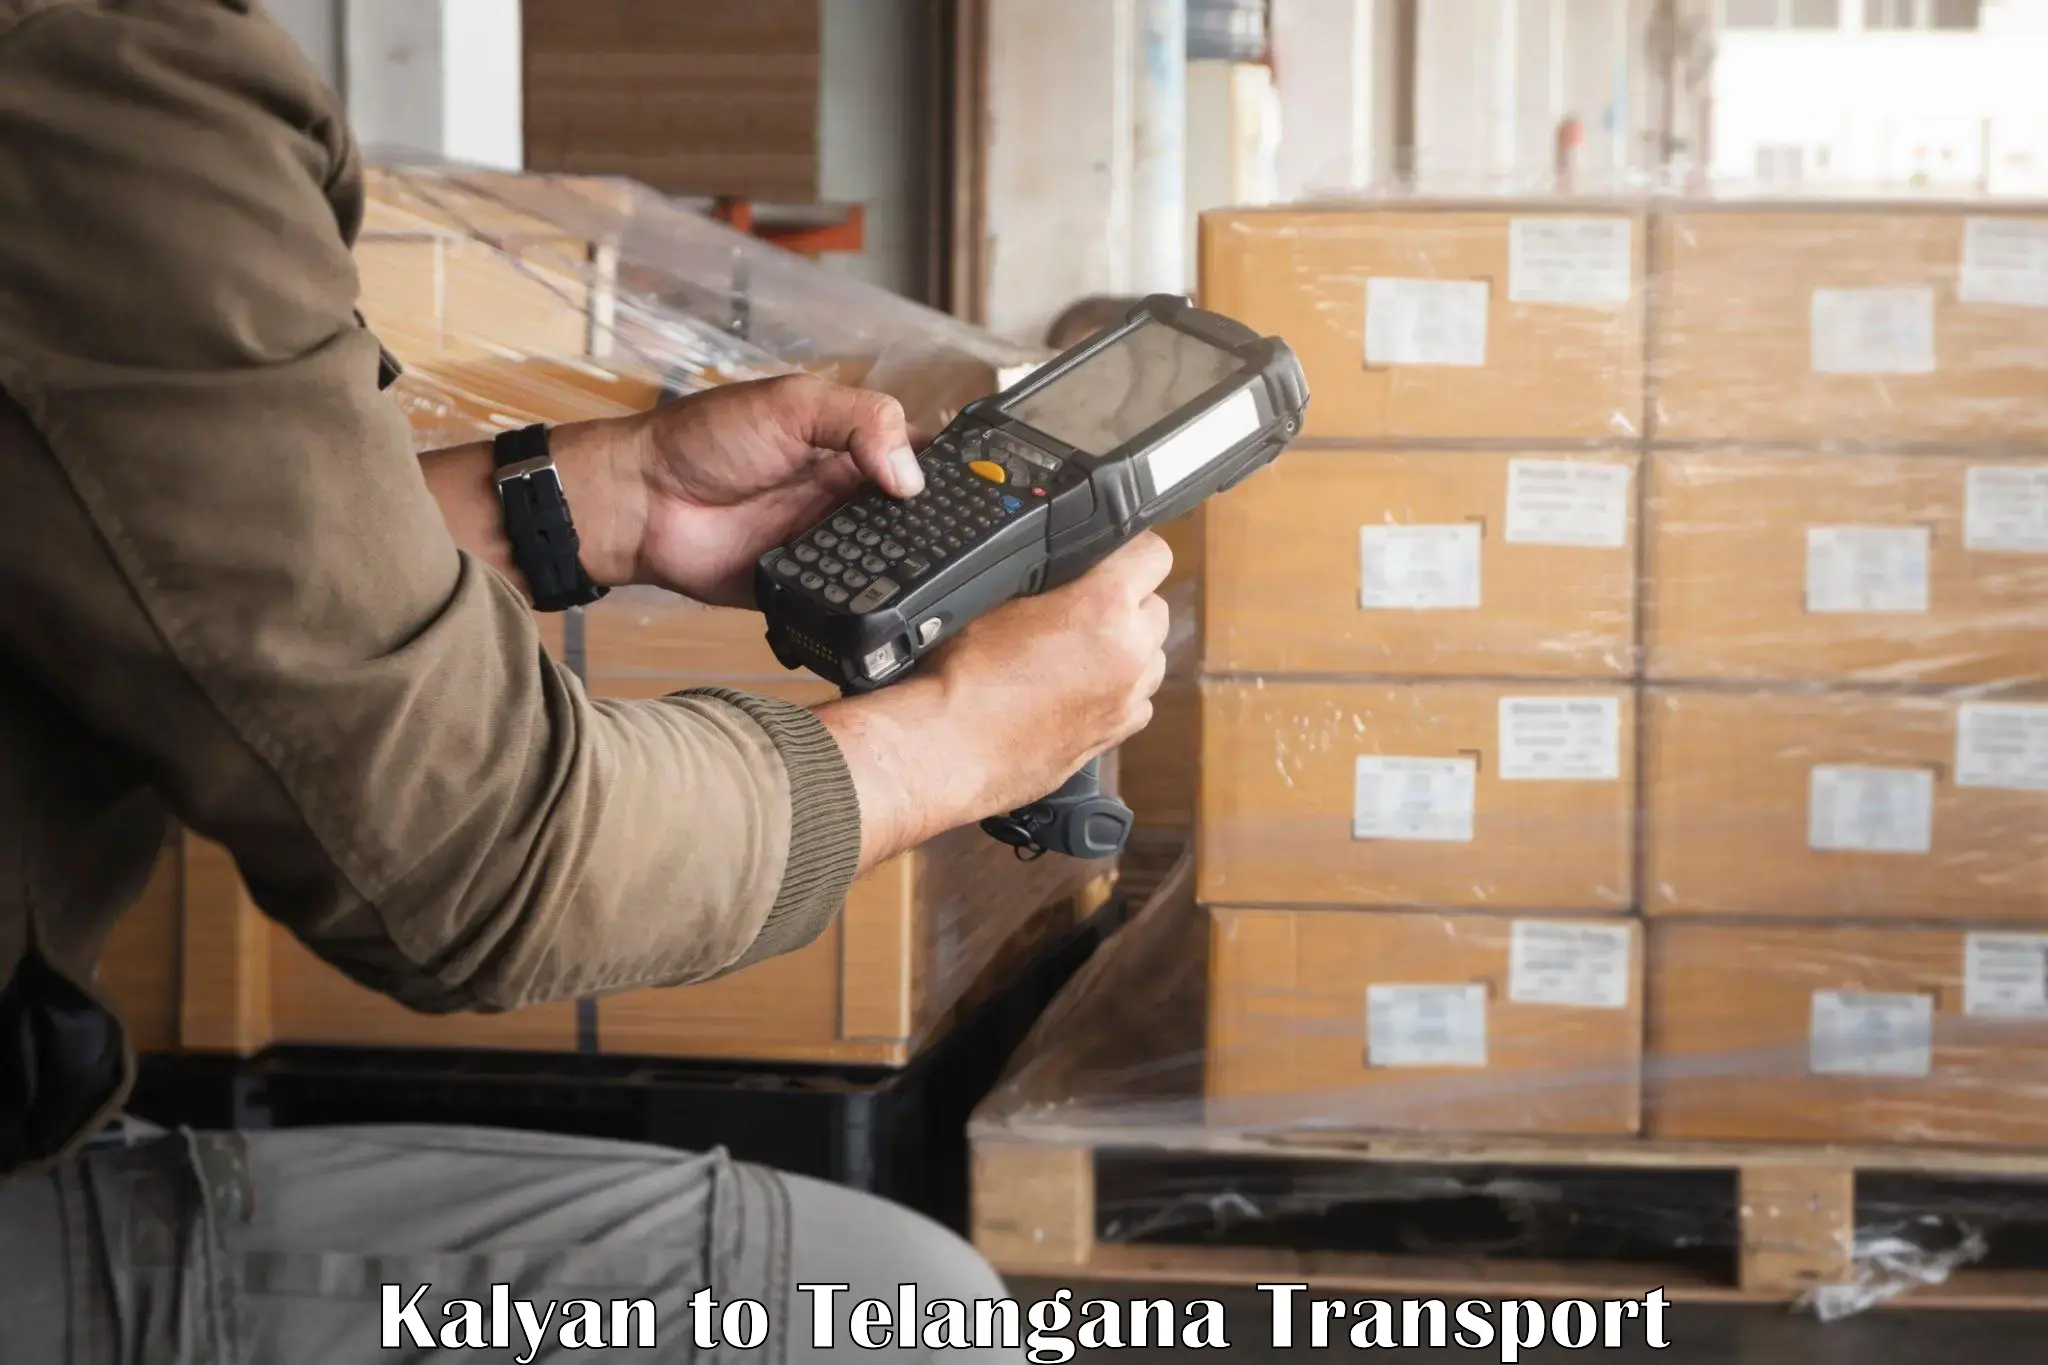 Vehicle transport services Kalyan to Yellandu